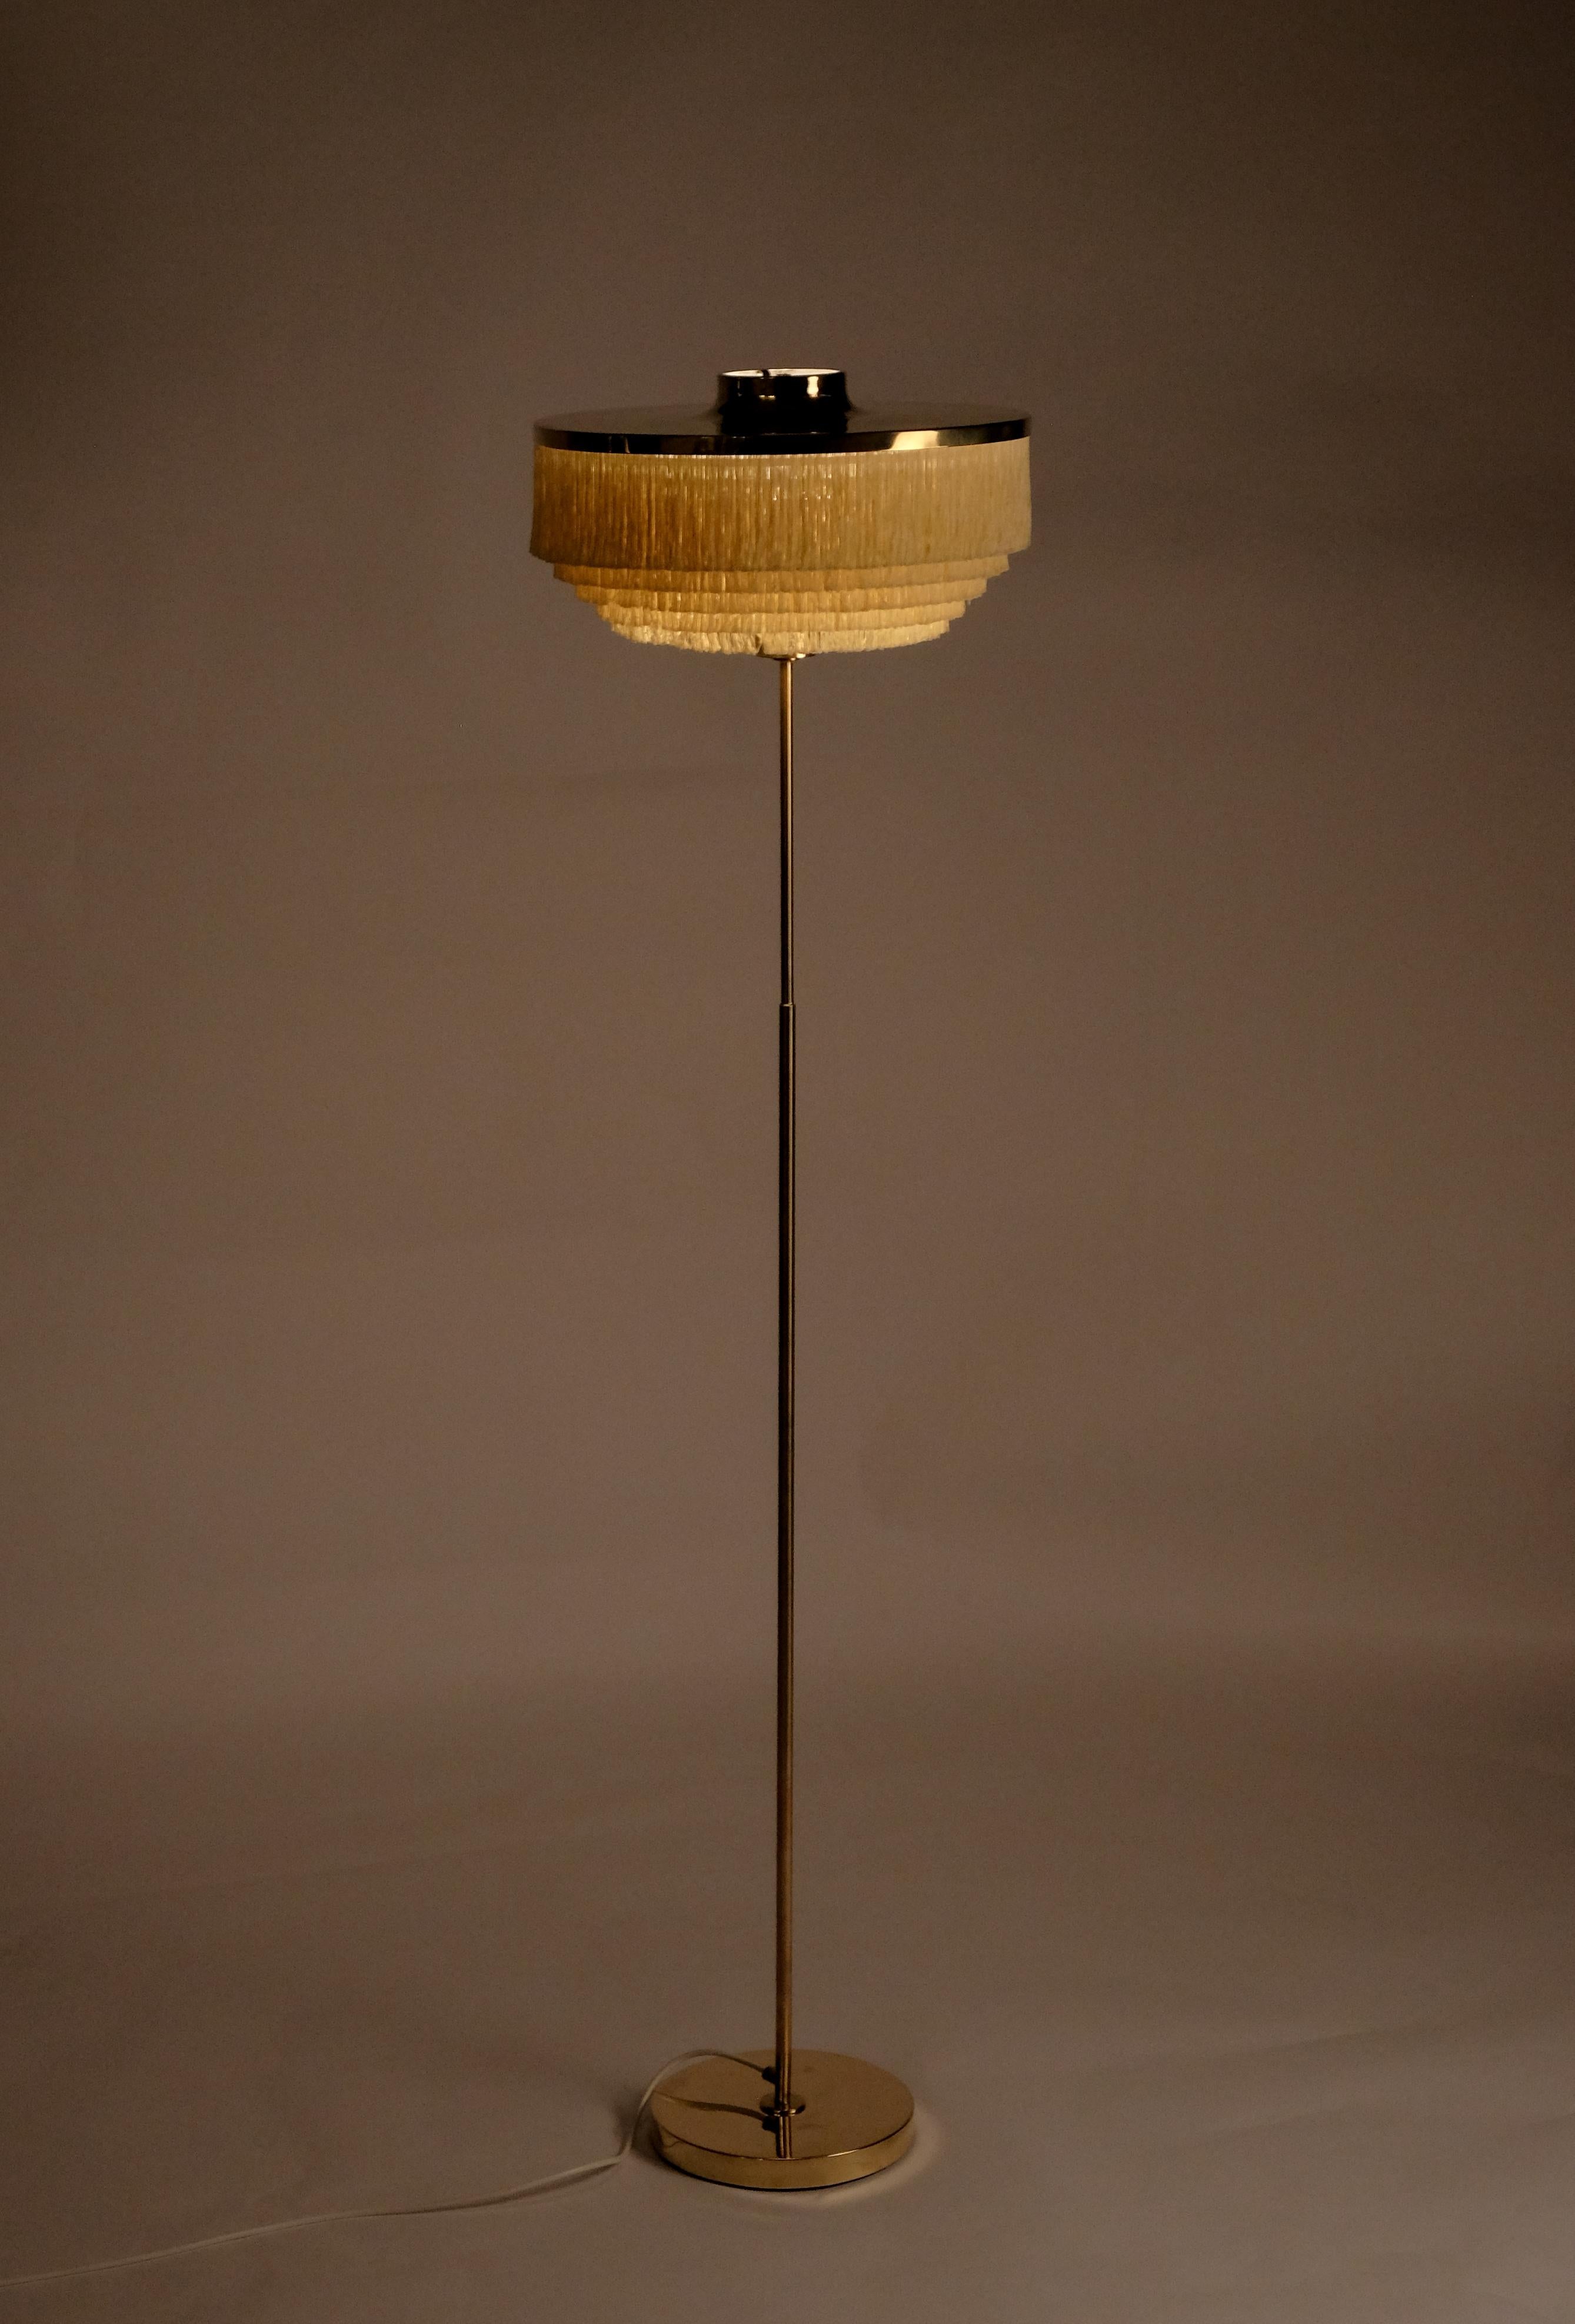 Produit par Hans-Agne Jakobsson AB à Markaryd, Suède.
Remarque : le prix indiqué est celui d'un (1) lampadaire. 